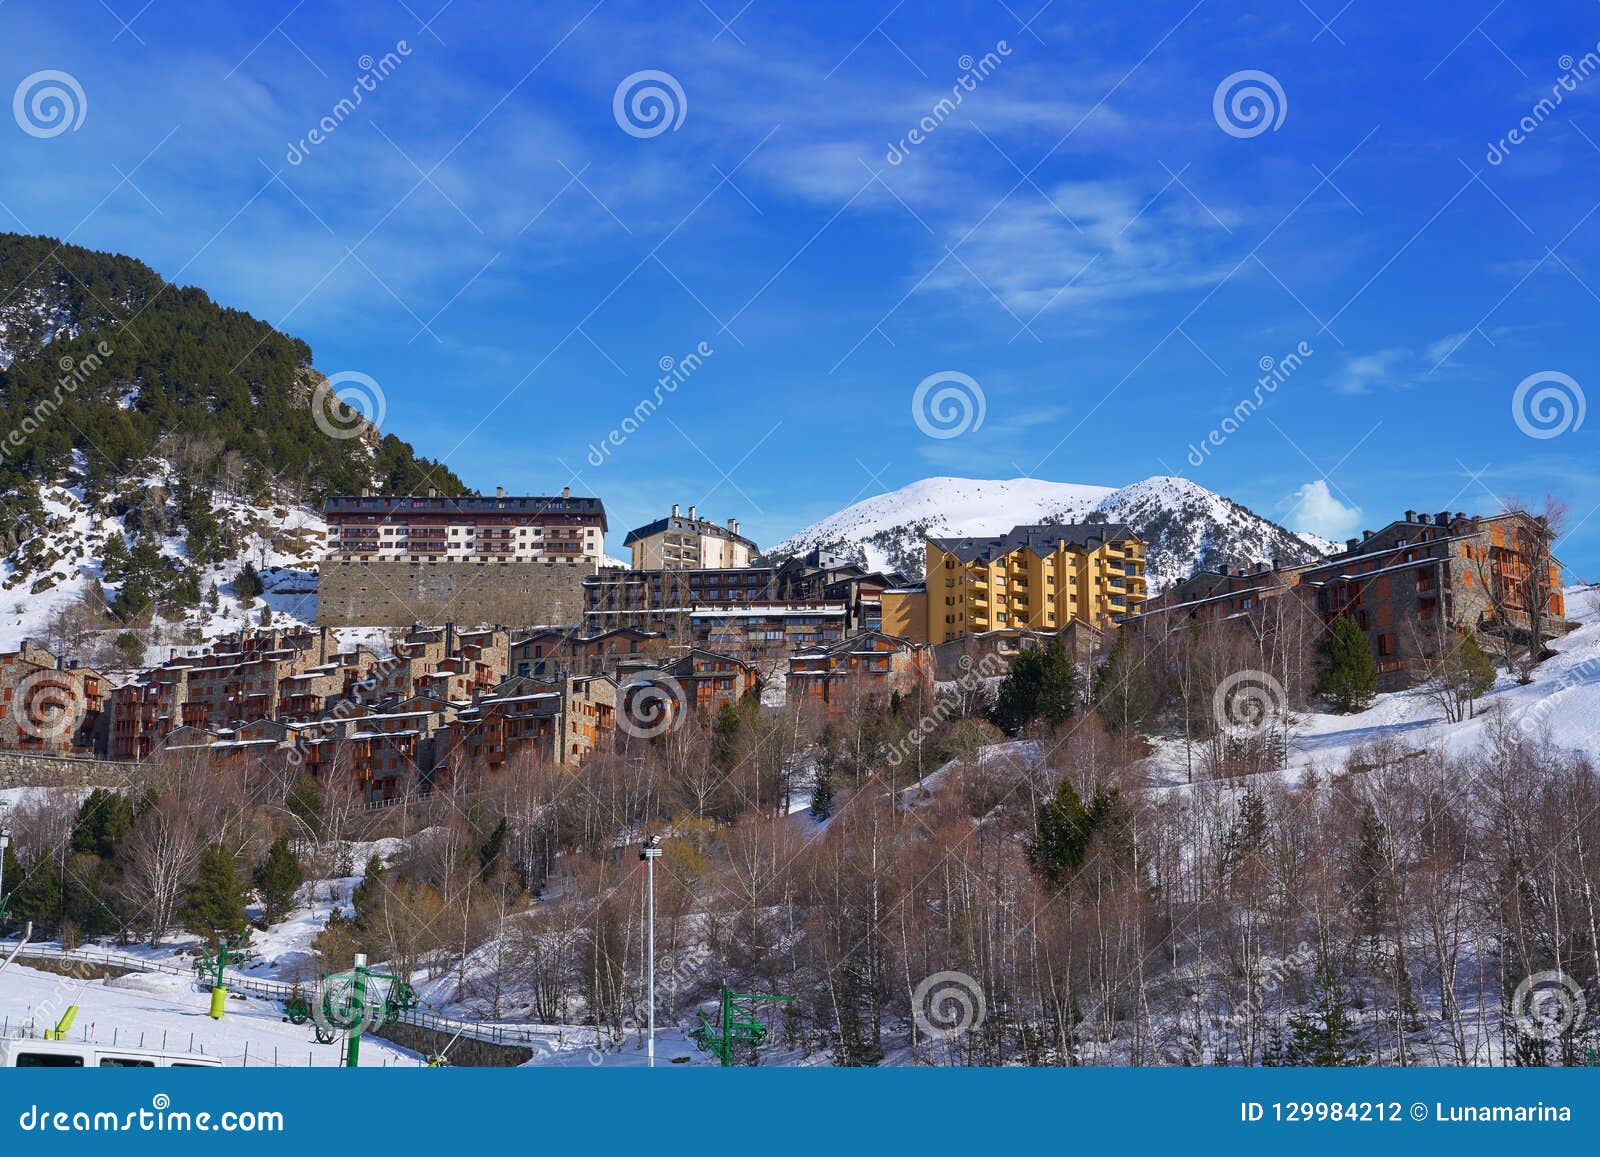 soldeu ski village in andorra grandvalira